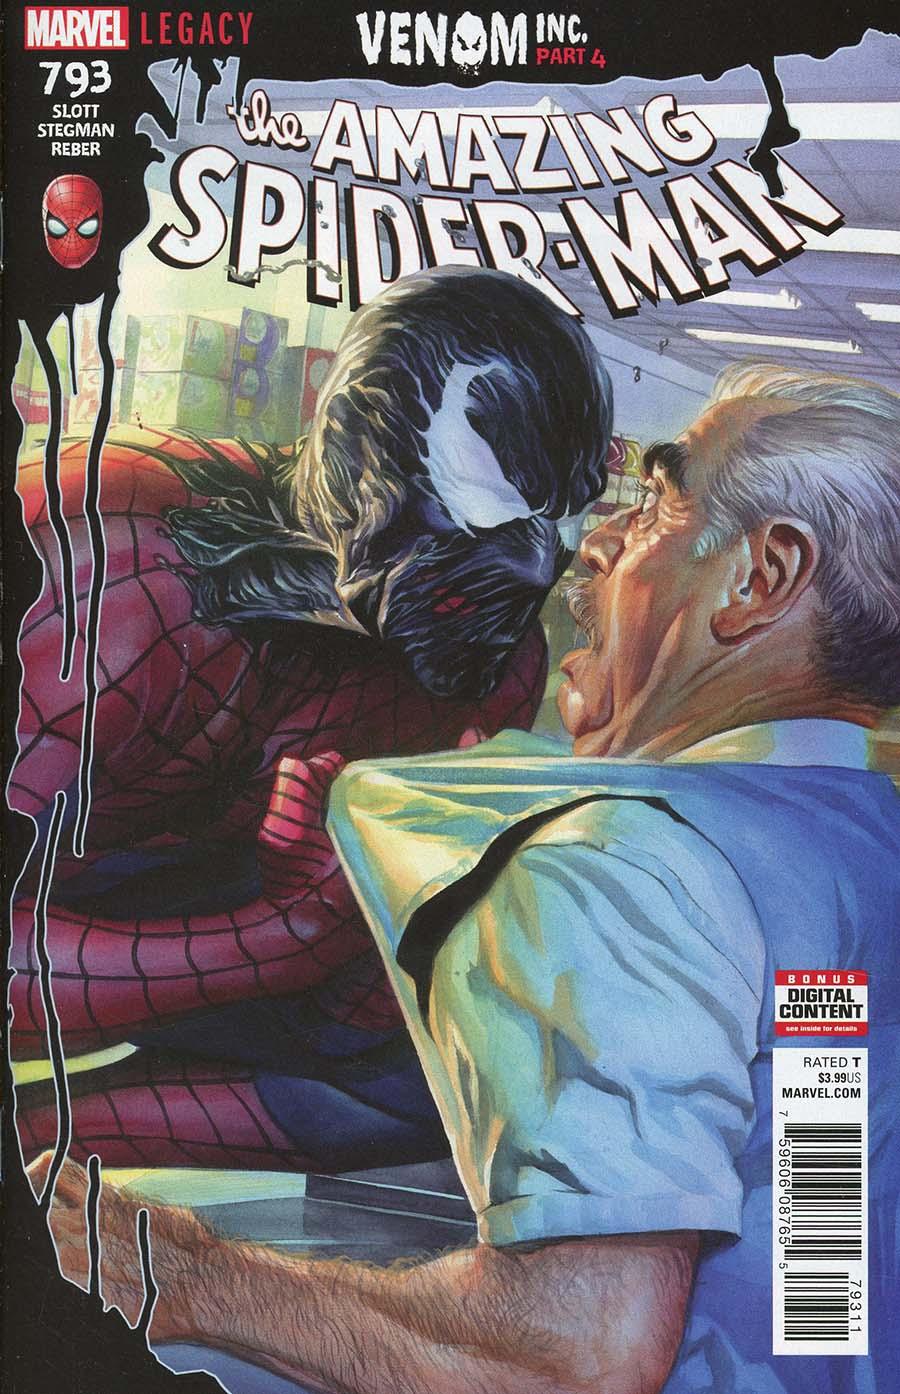 Amazing Spider-Man Vol. 4 #793